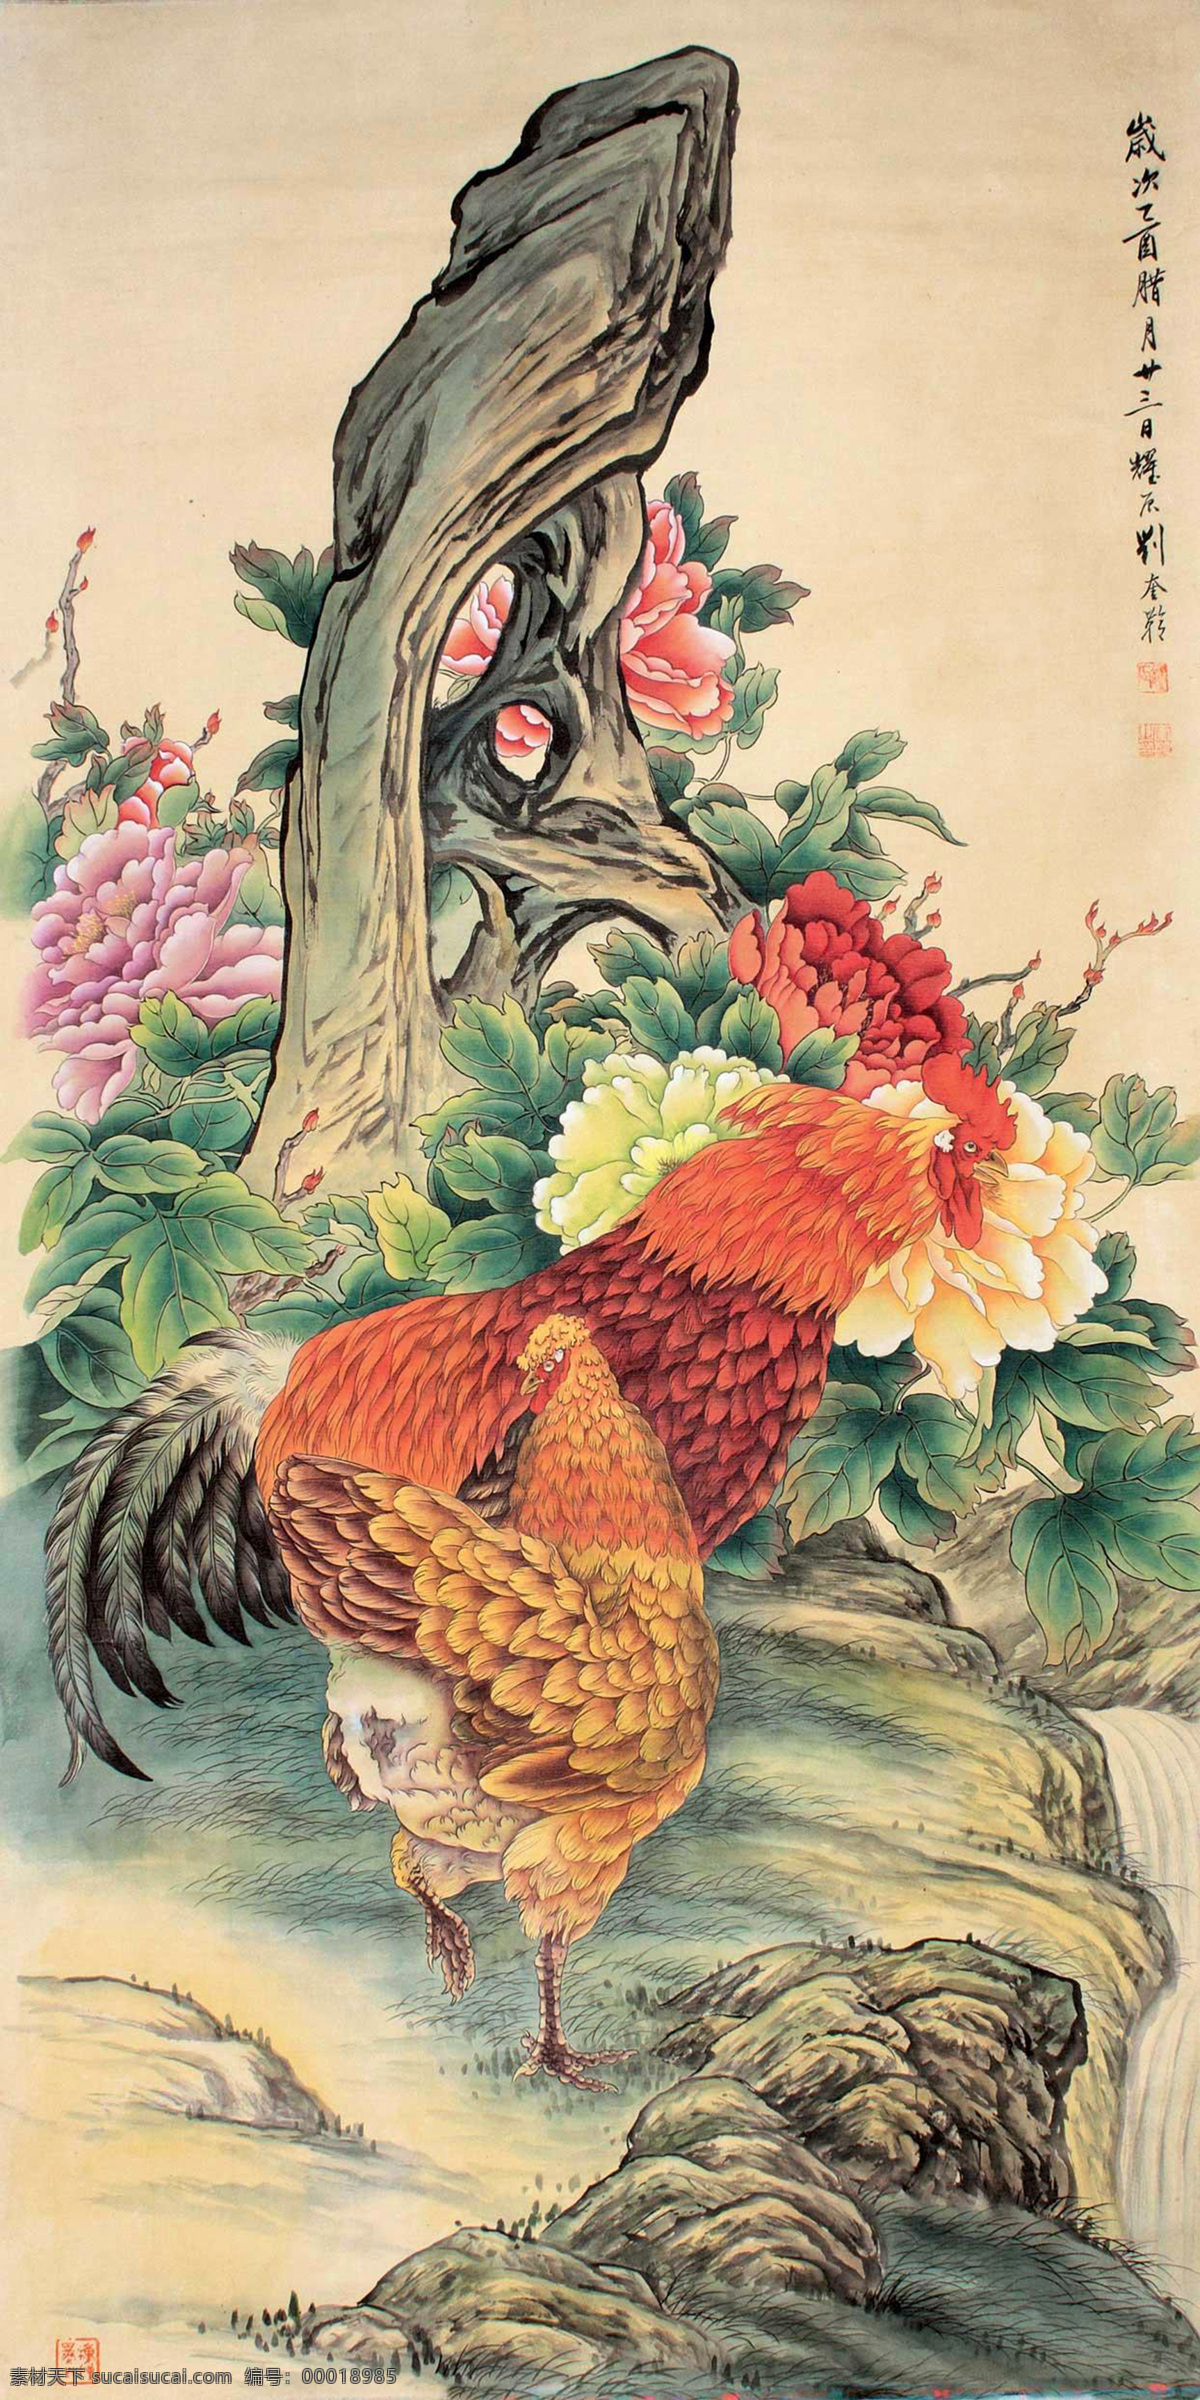 双吉图 国画 刘奎龄 双吉 鸡 公鸡 母鸡 小鸡 动物 绘画书法 文化艺术 国画刘奎龄